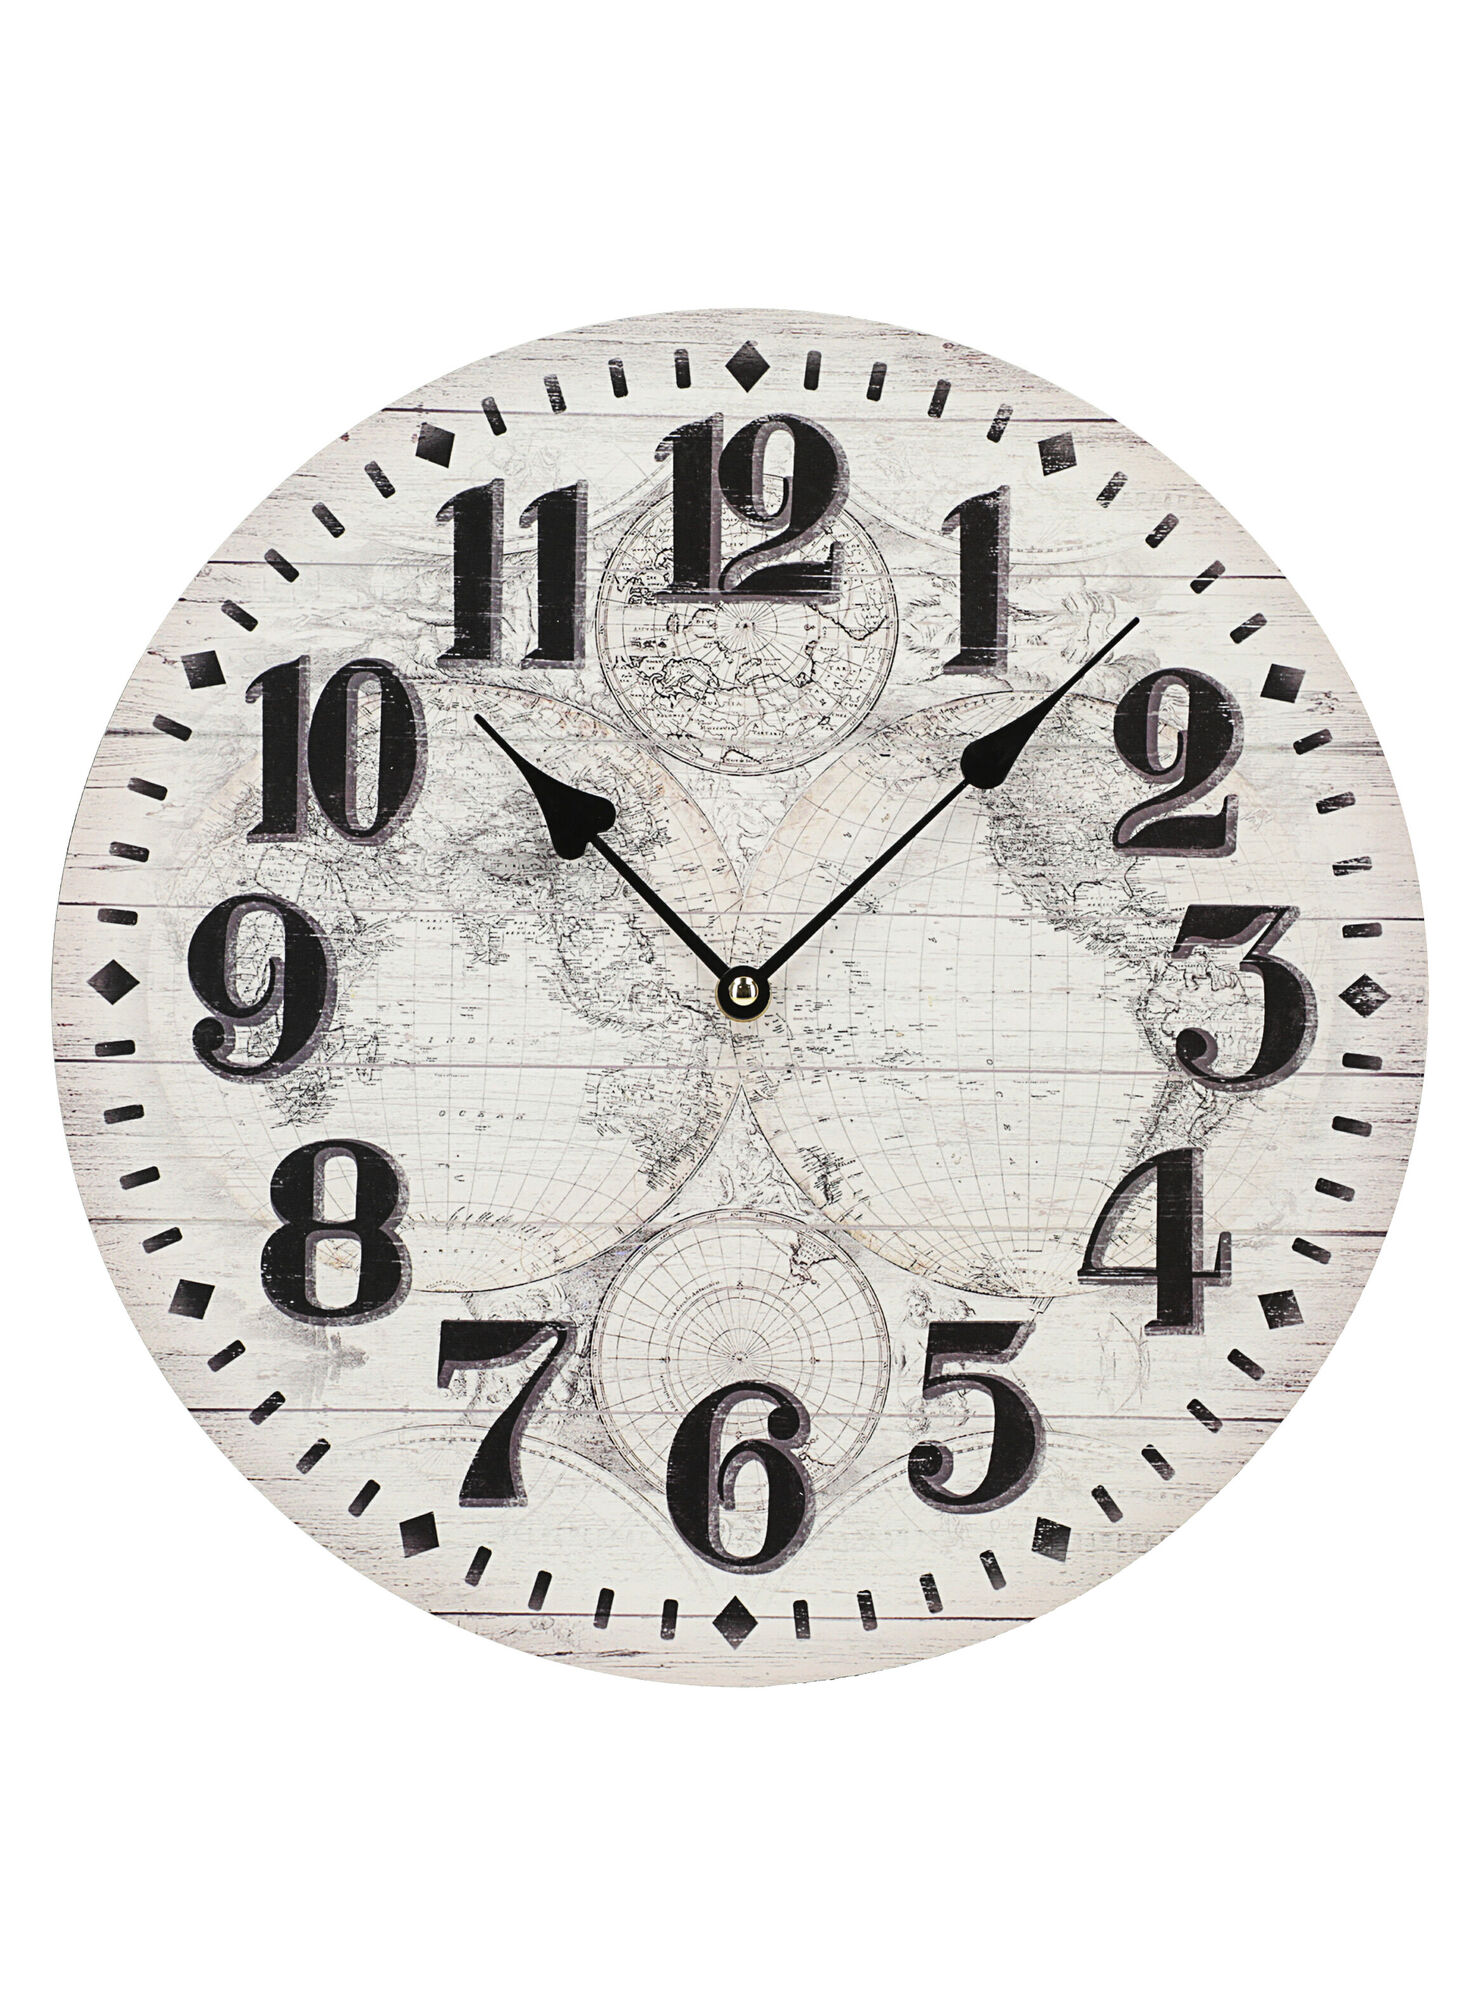 cultura Maestría Tremendo Reloj Diseño Mapa Attimo - Relojes | Paris.cl